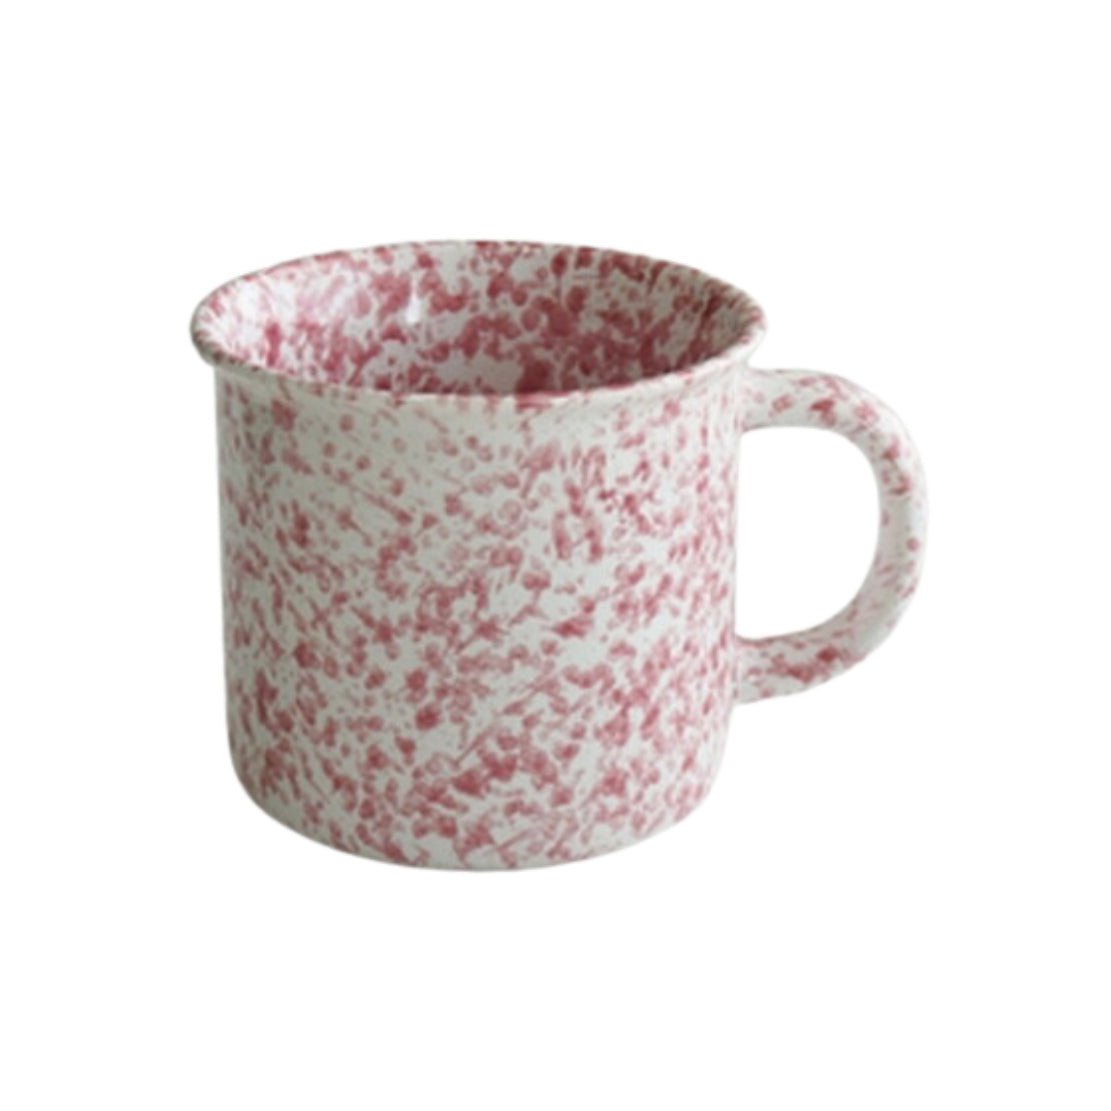 Pink & white splash ink ceramic coffee mug